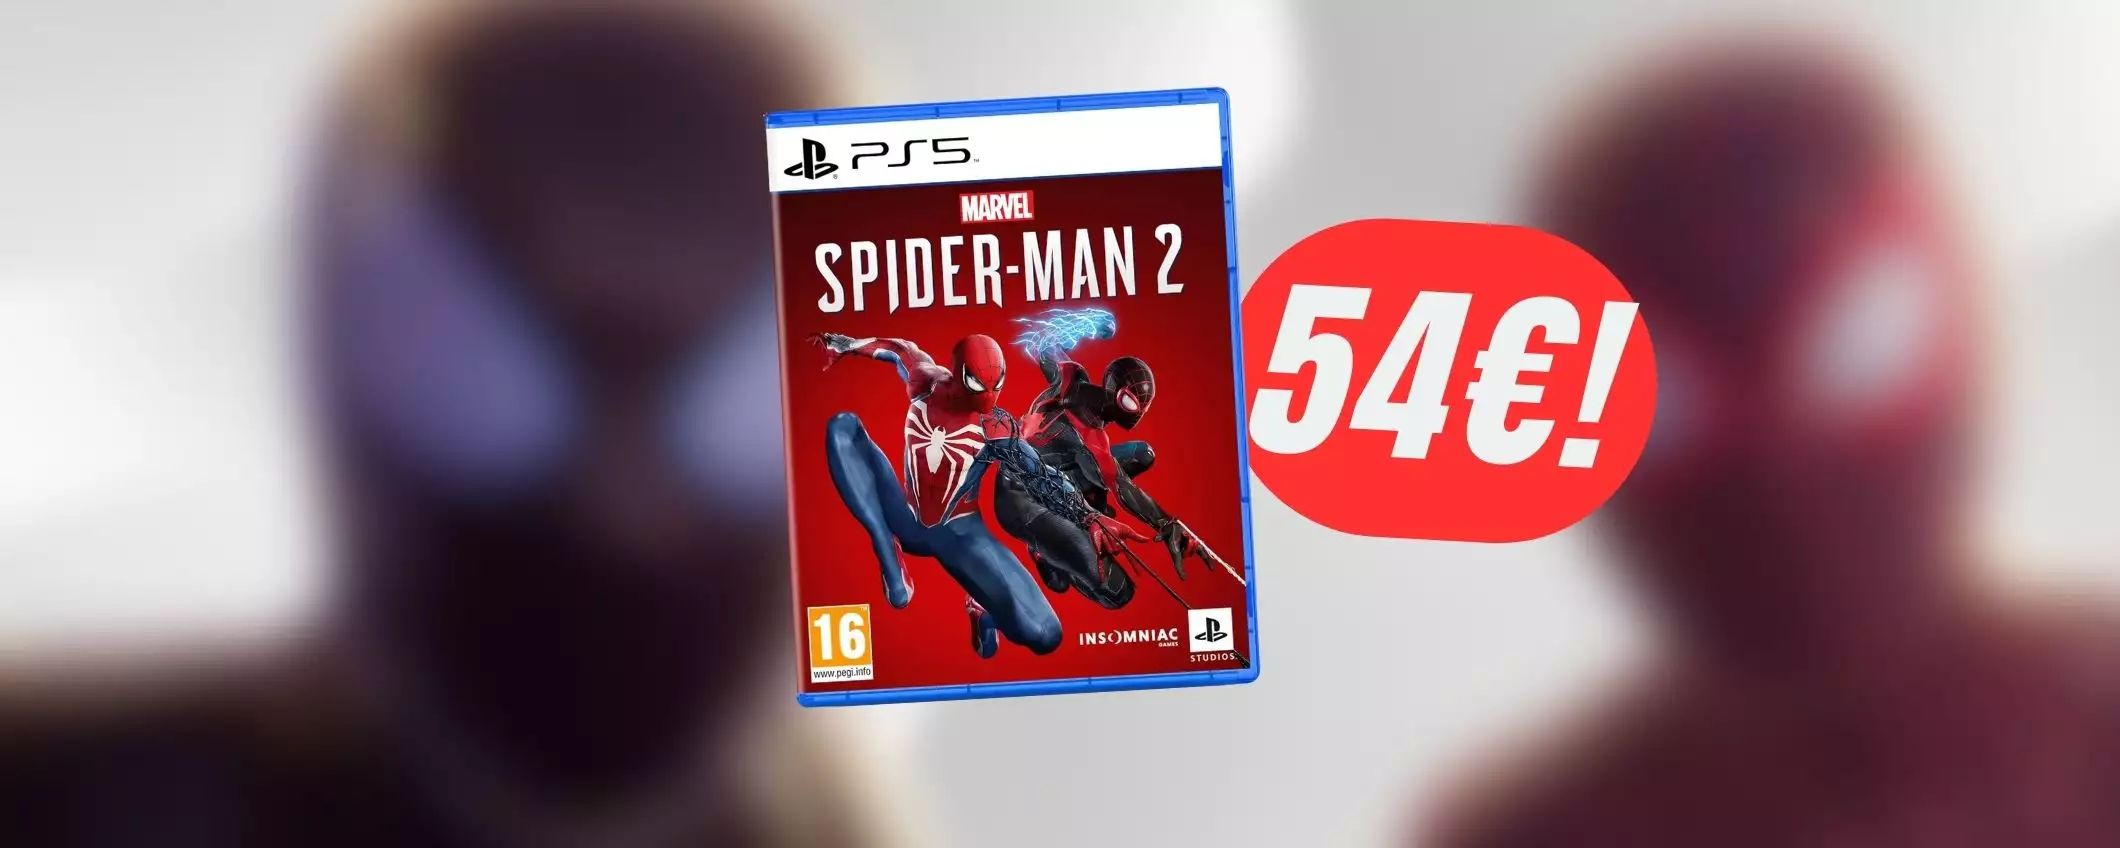 PREZZONE per Marvel's Spider Man 2 (PS5): solo 54€ su Amazon